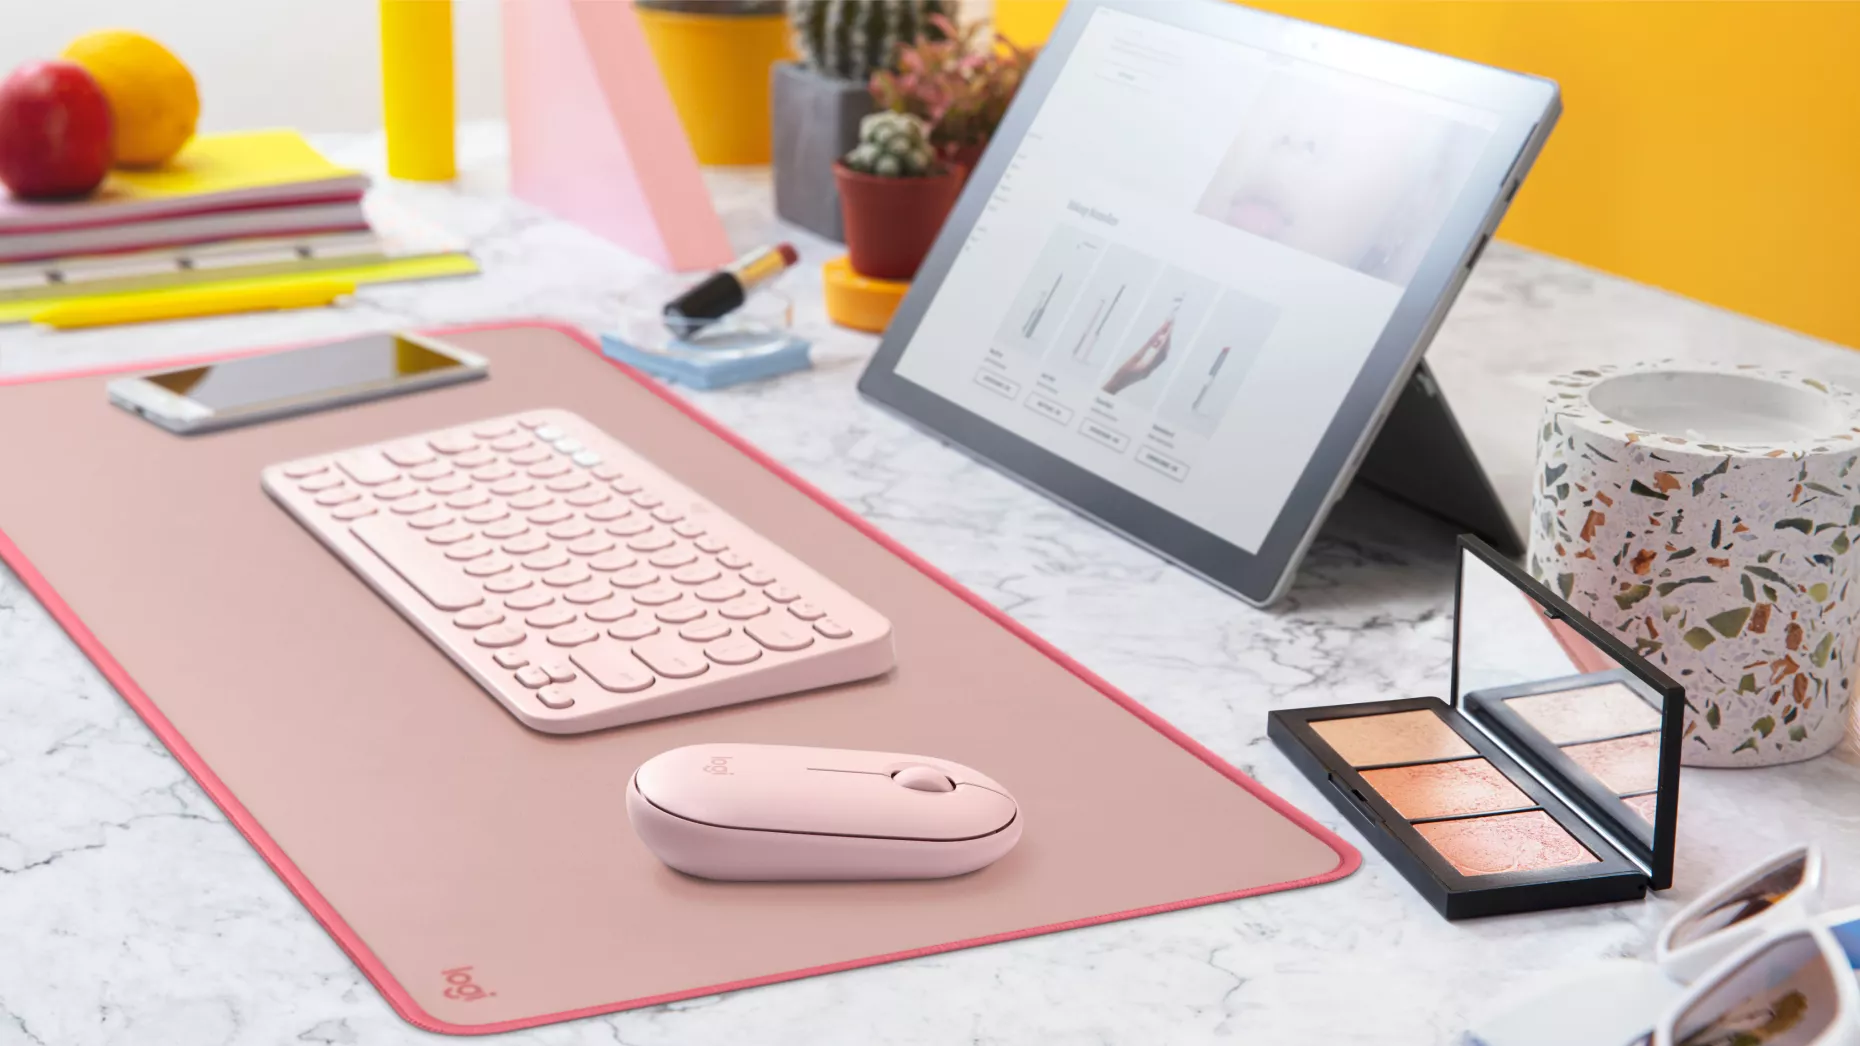 Vente LOGITECH Desk Mat Studio Series Mouse pad lavender Logitech au meilleur prix - visuel 8